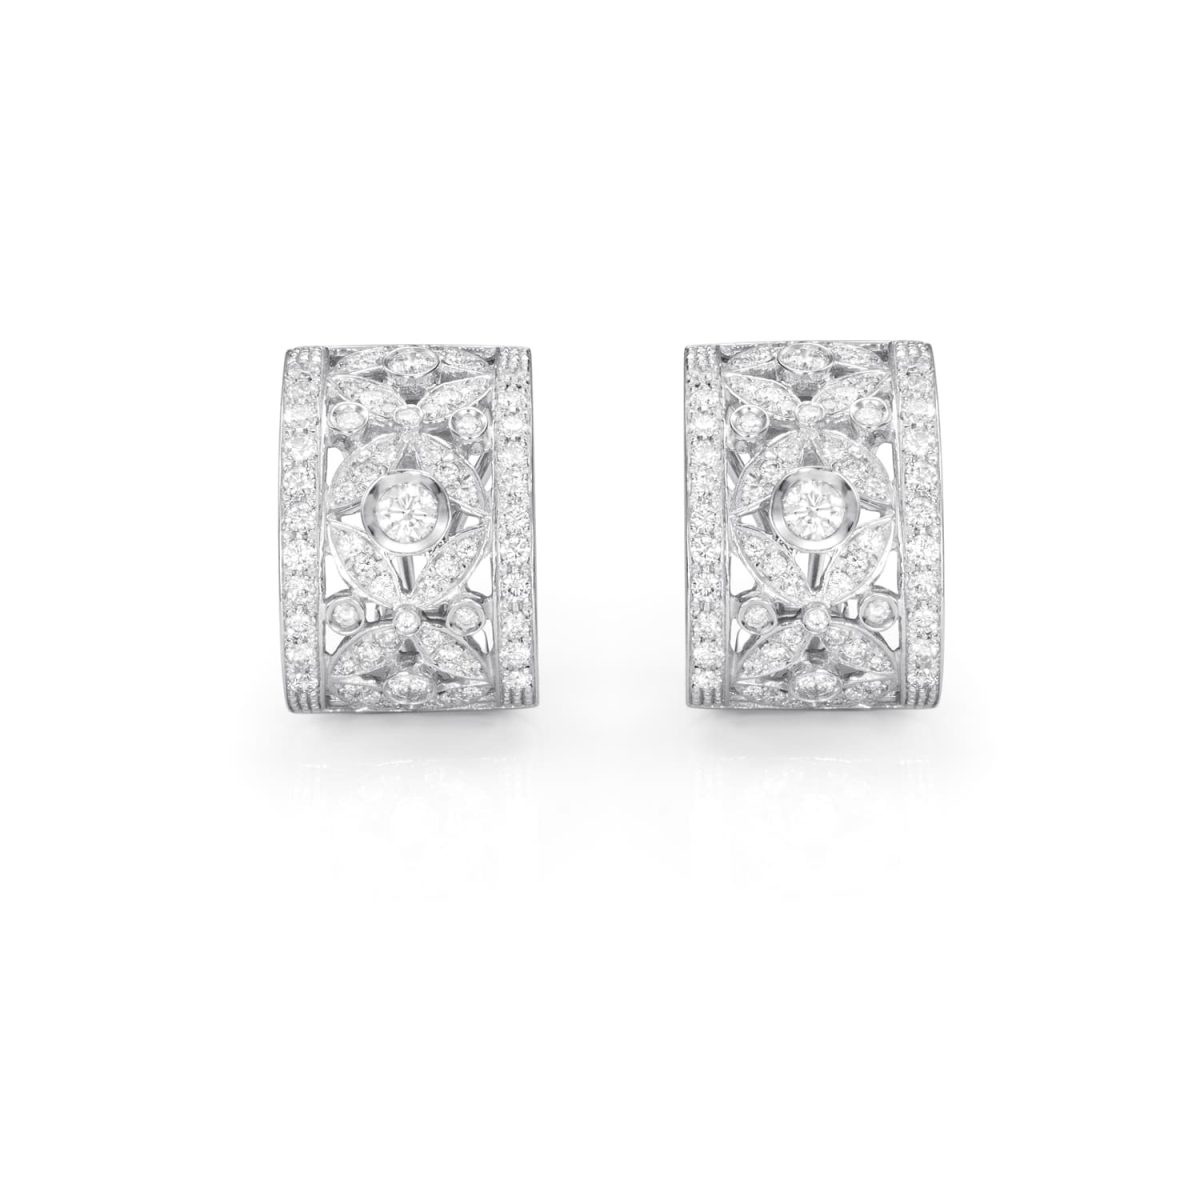 Pendientes Special Pendientes de oro blanco de 18K adornados con 2,20ct de diamantes talla brillante.